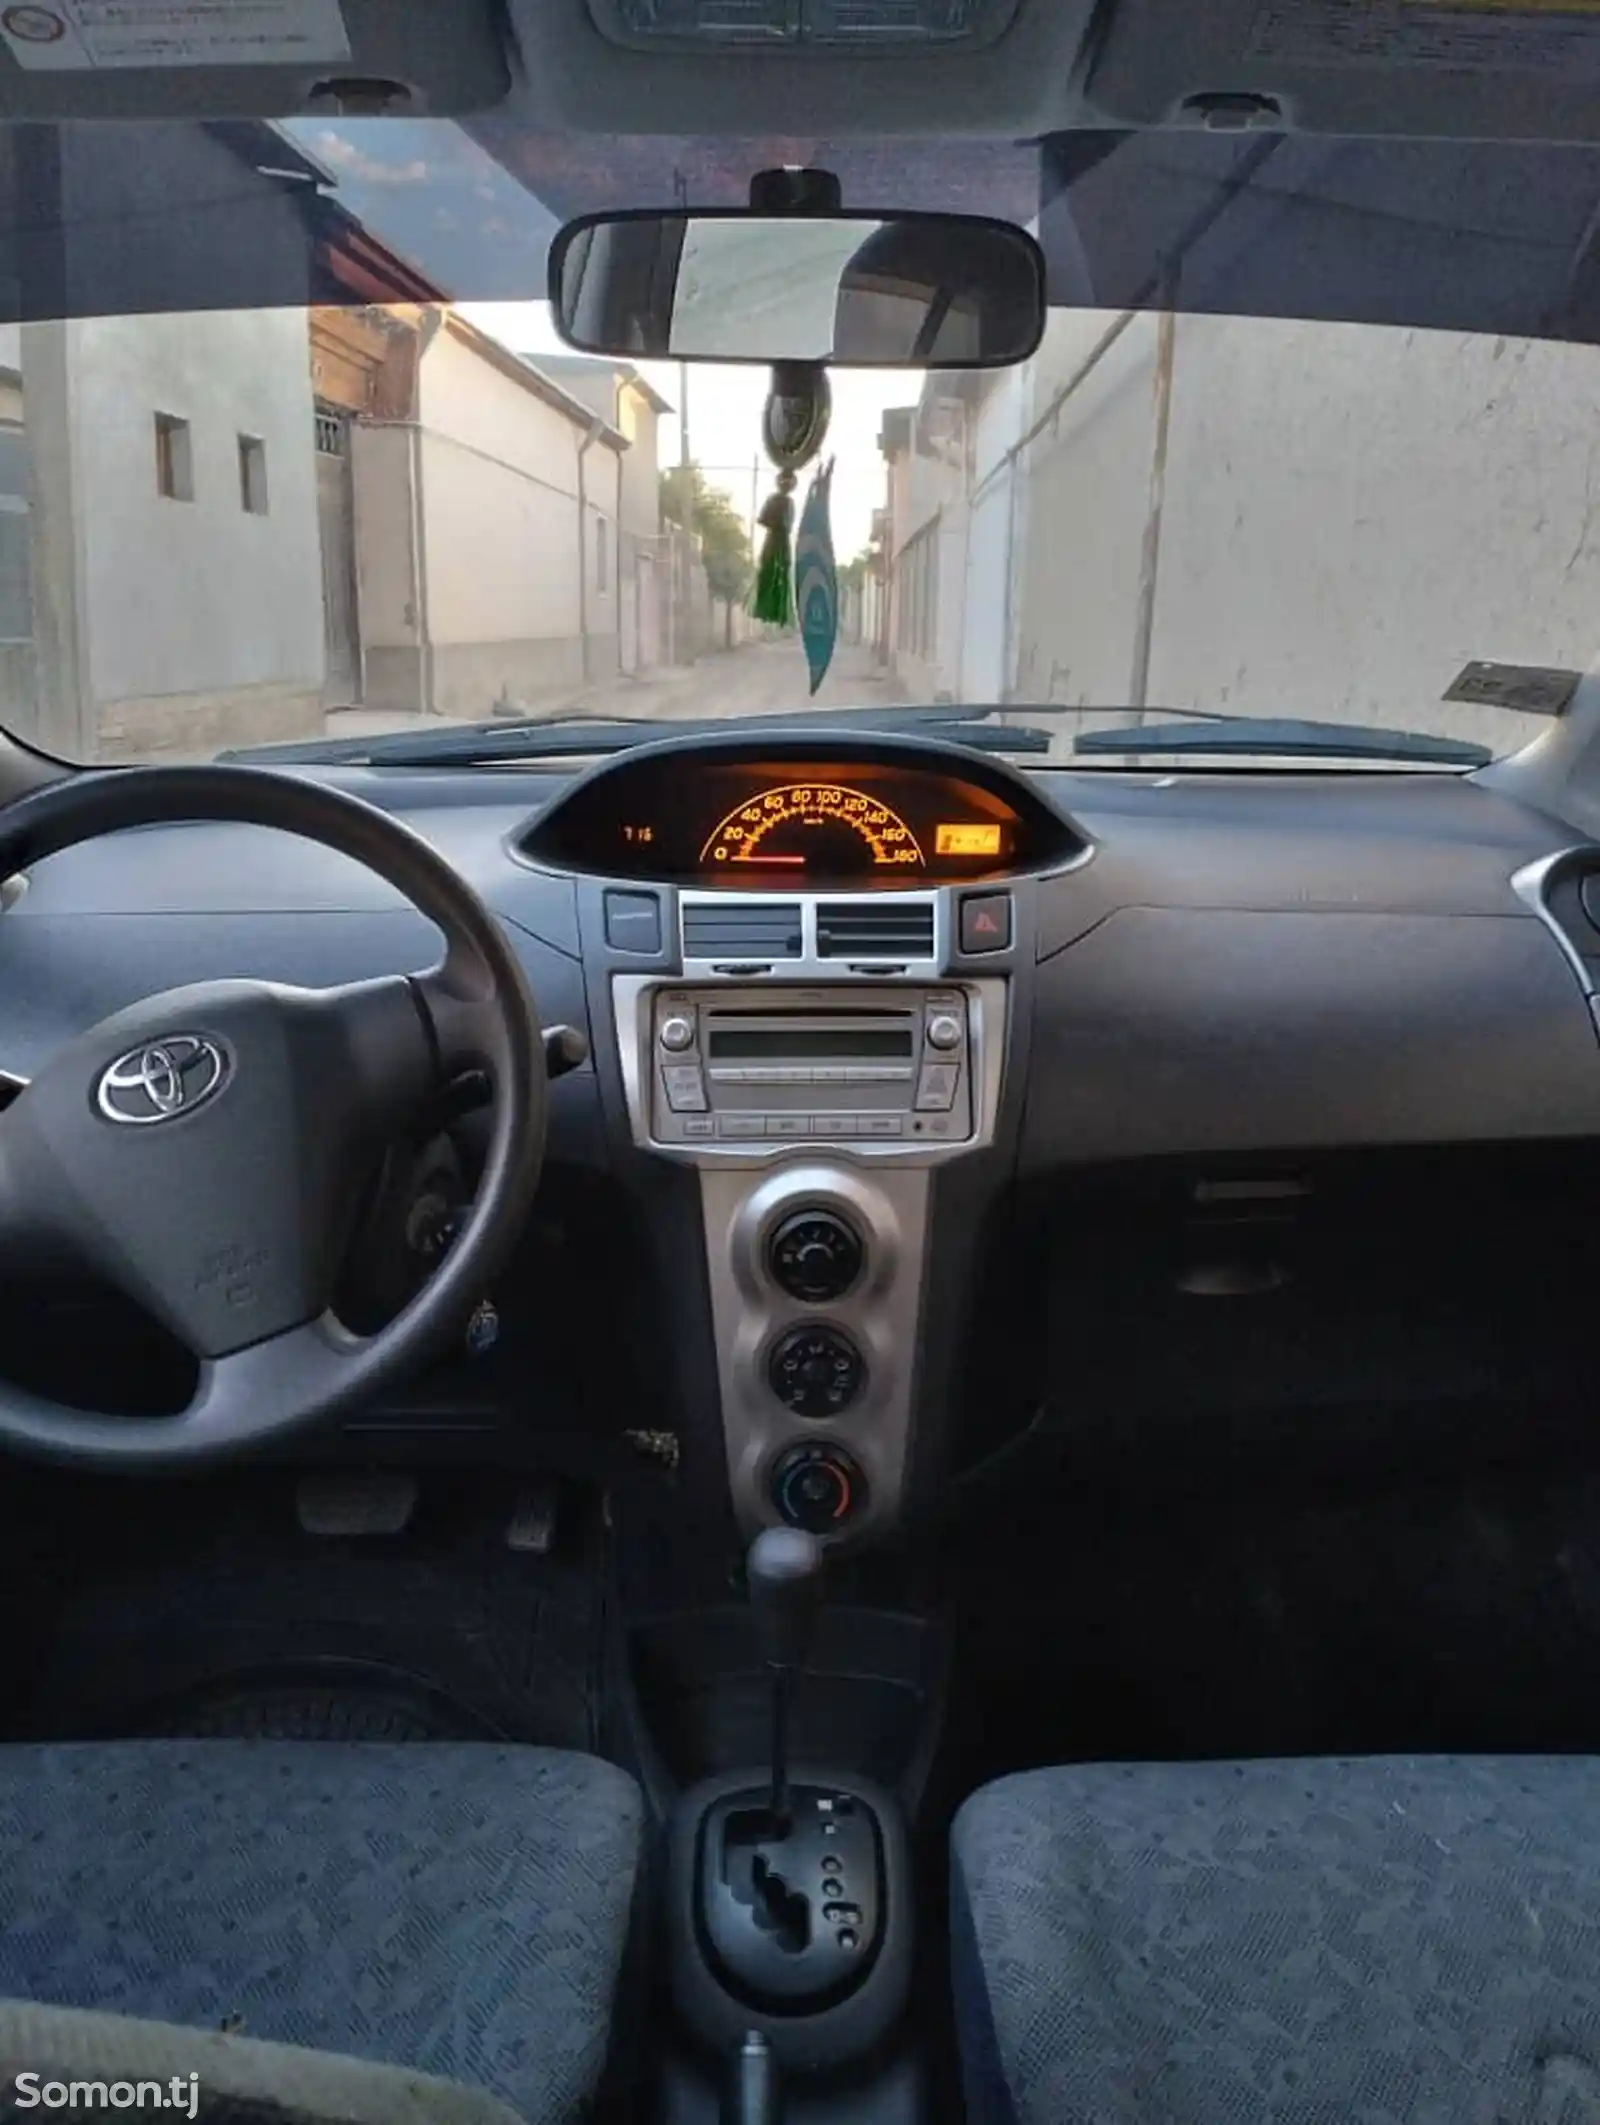 Toyota Vitz, 2010-4